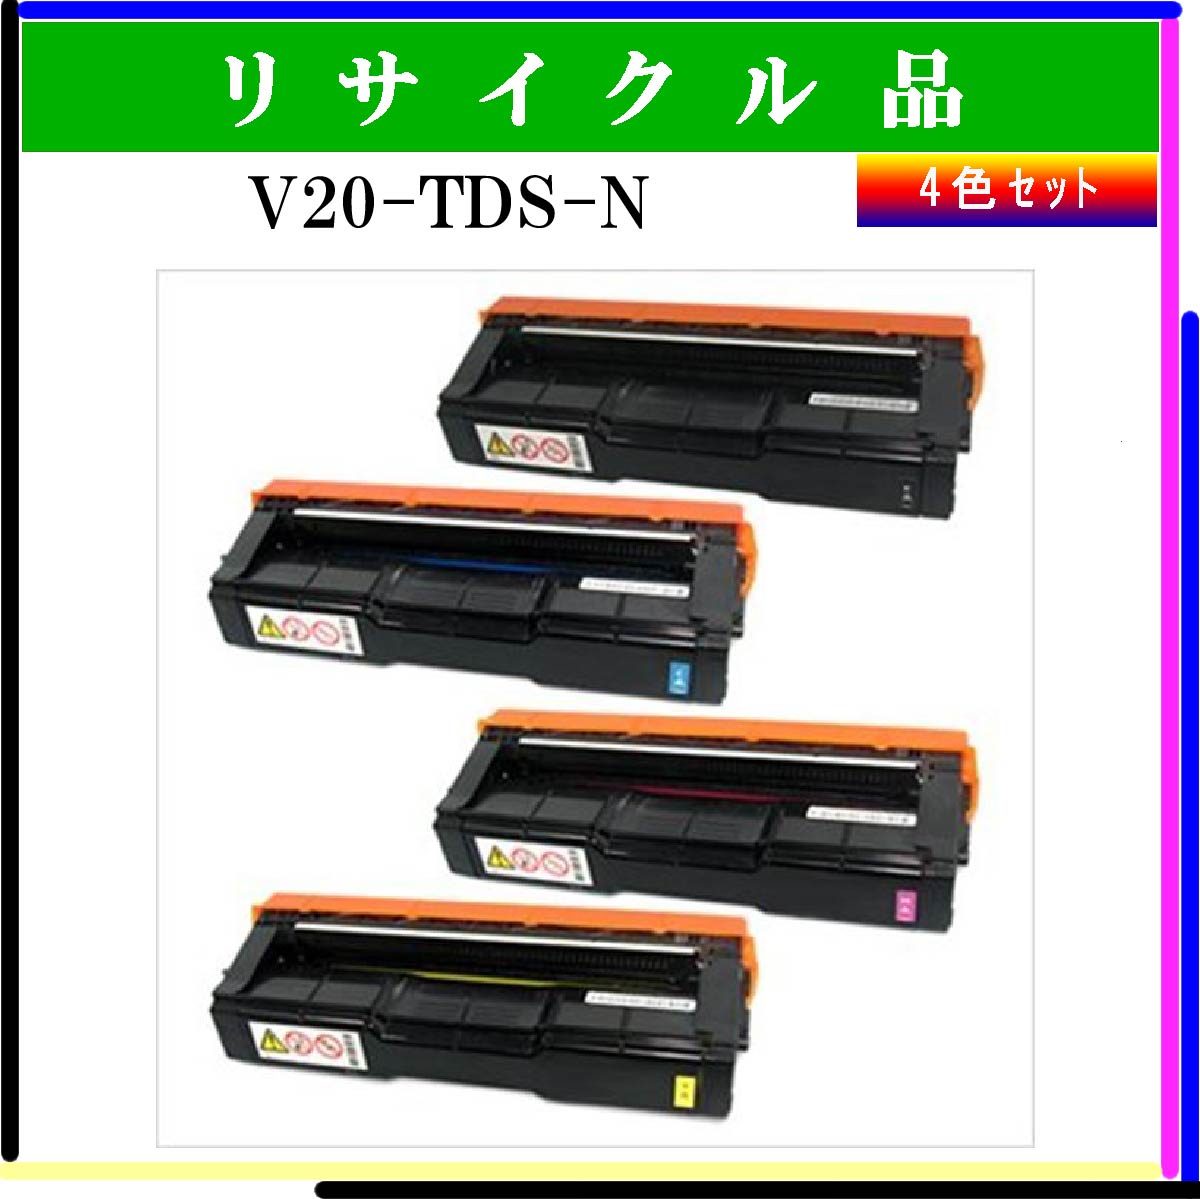 V20-TDS-N (4色ｾｯﾄ)